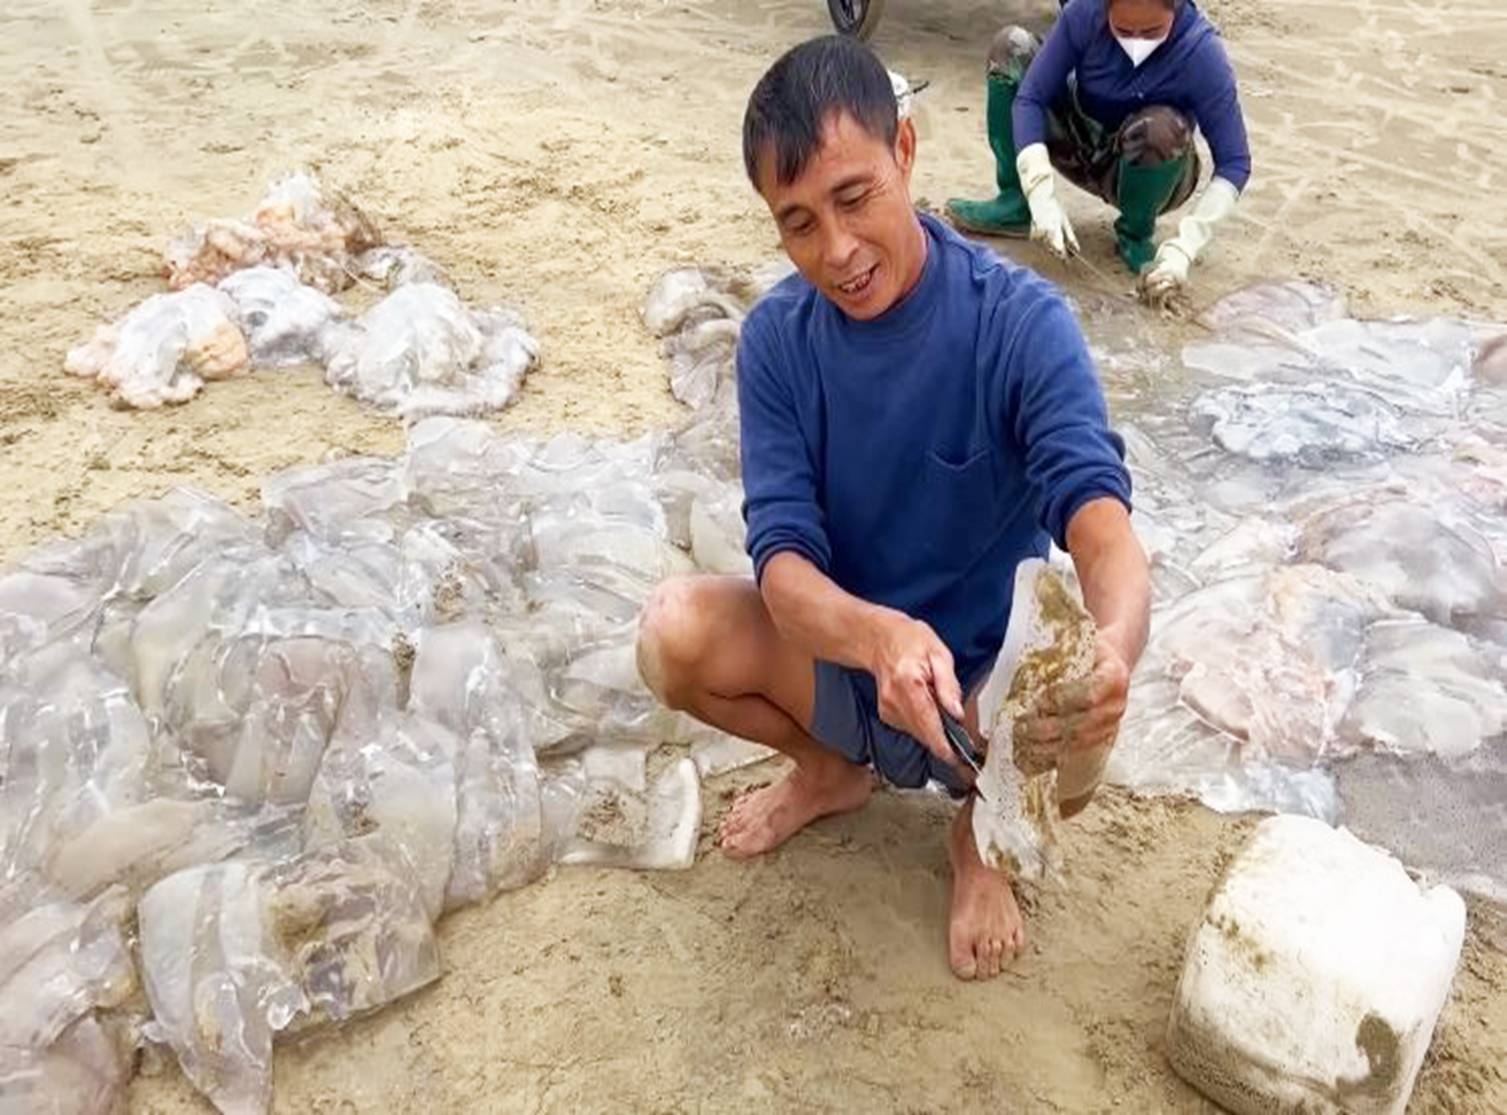 Ngư dân cắt nhỏ sứa trộn với cát biển, dân tình phẫn nộ vì mất vệ sinh, nghe giải thích mới ngỡ ngàng-5